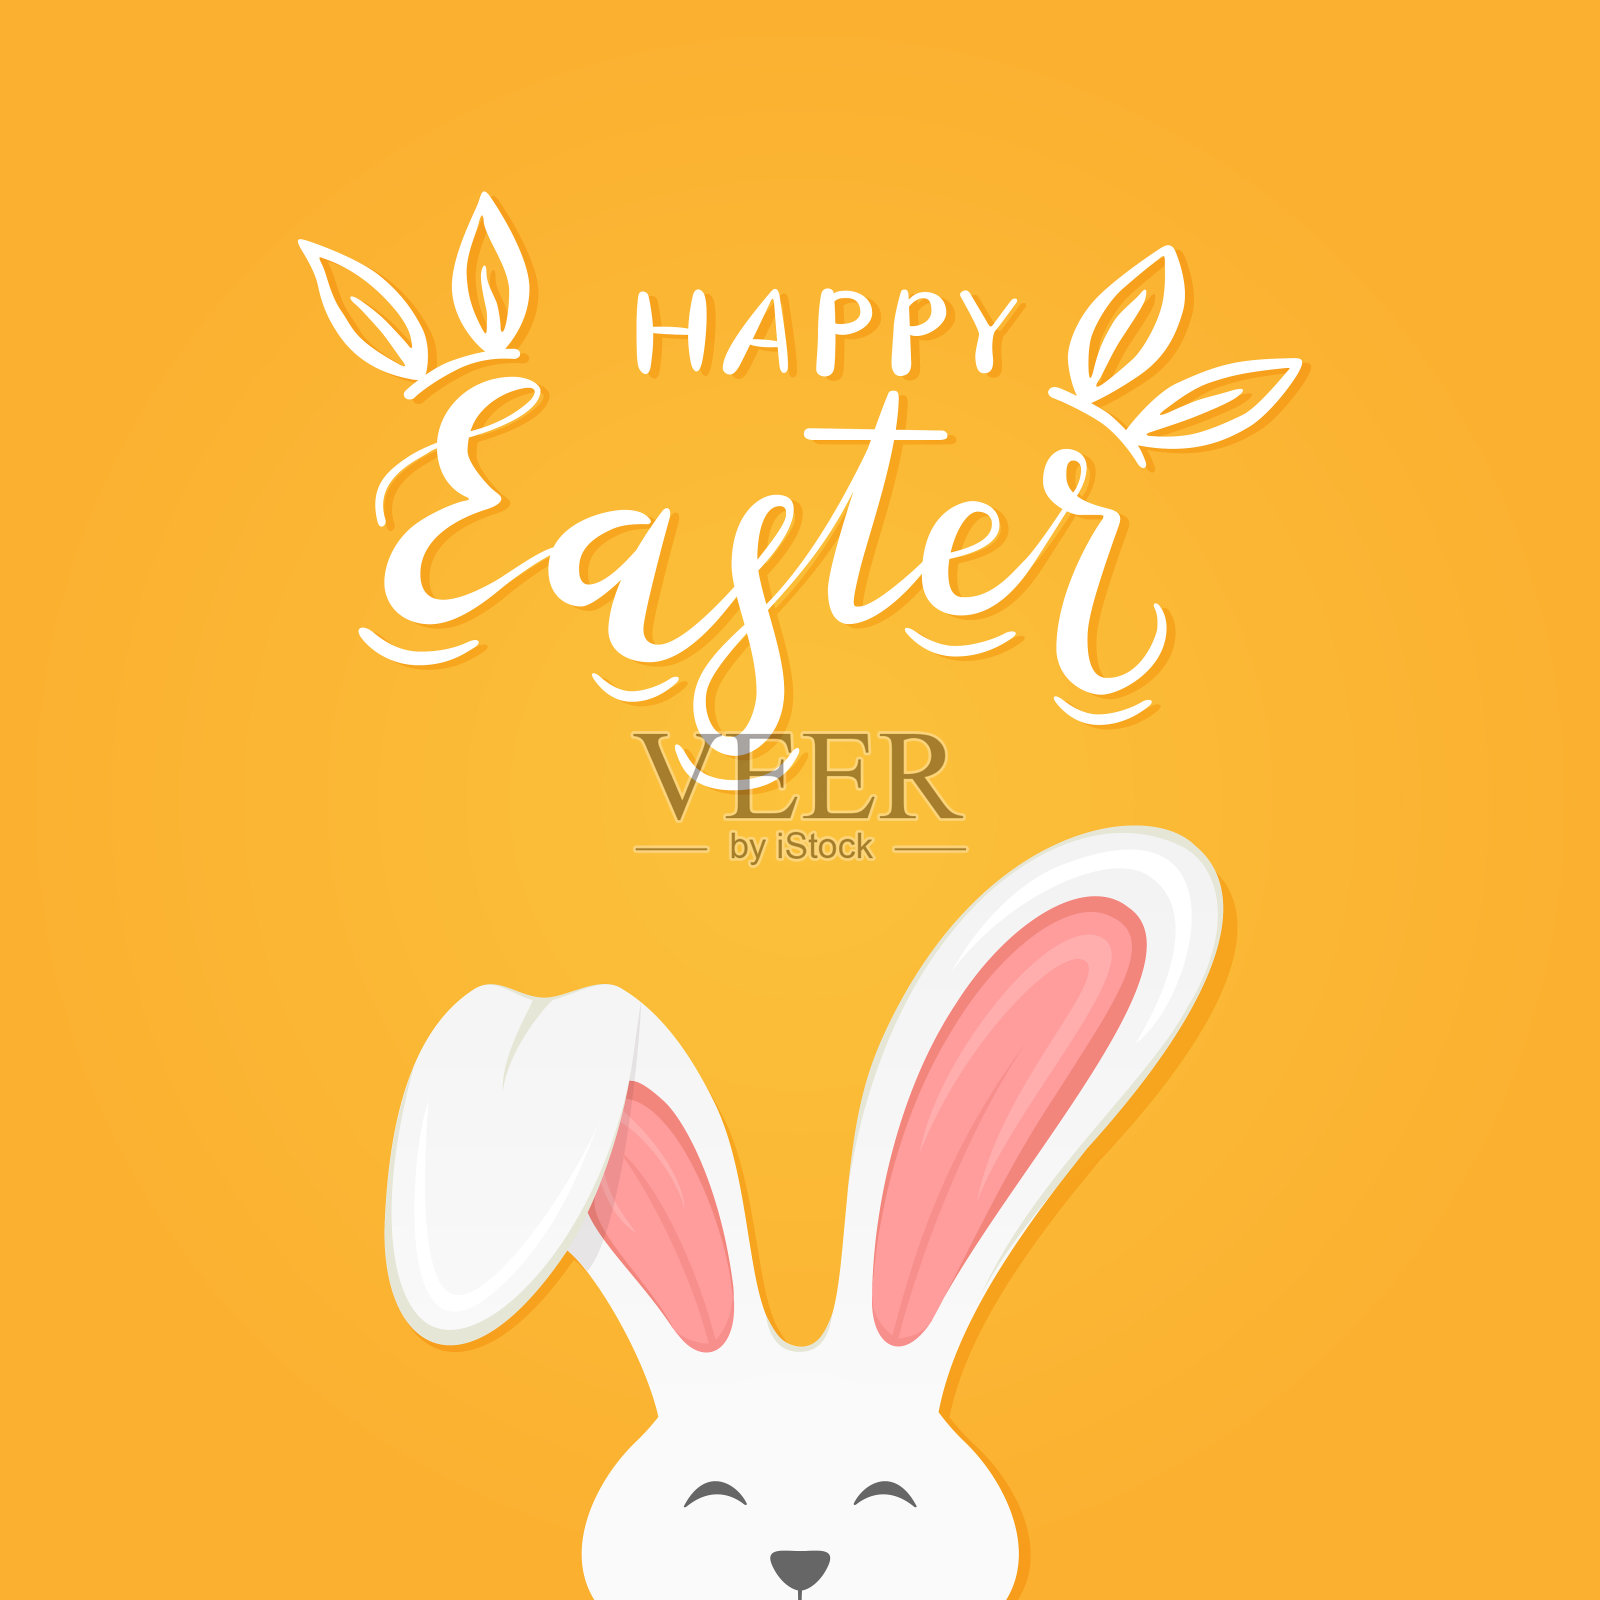 橙色背景与文字复活节快乐和兔子耳朵设计模板素材